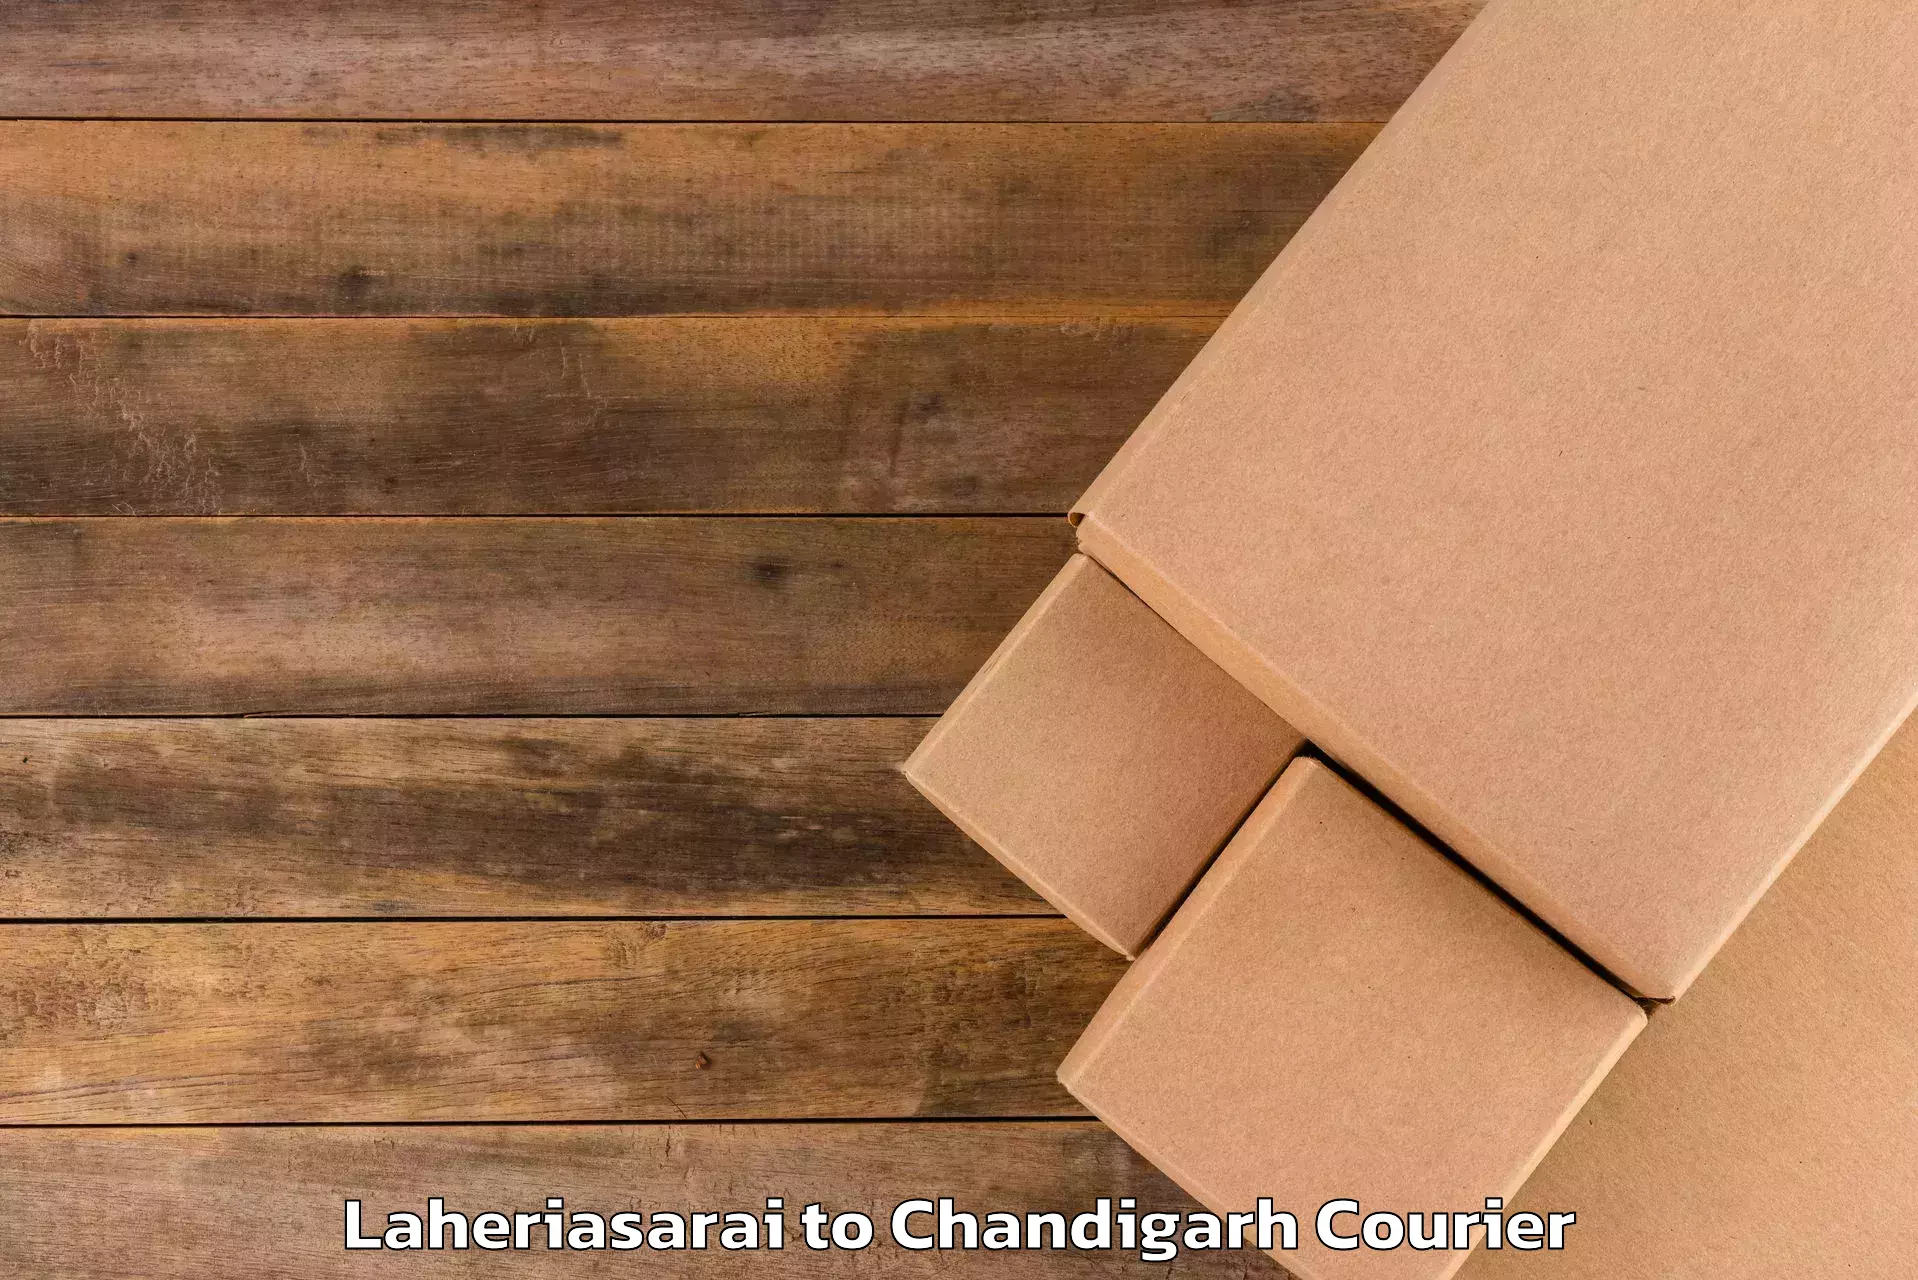 Luggage transfer service Laheriasarai to Chandigarh